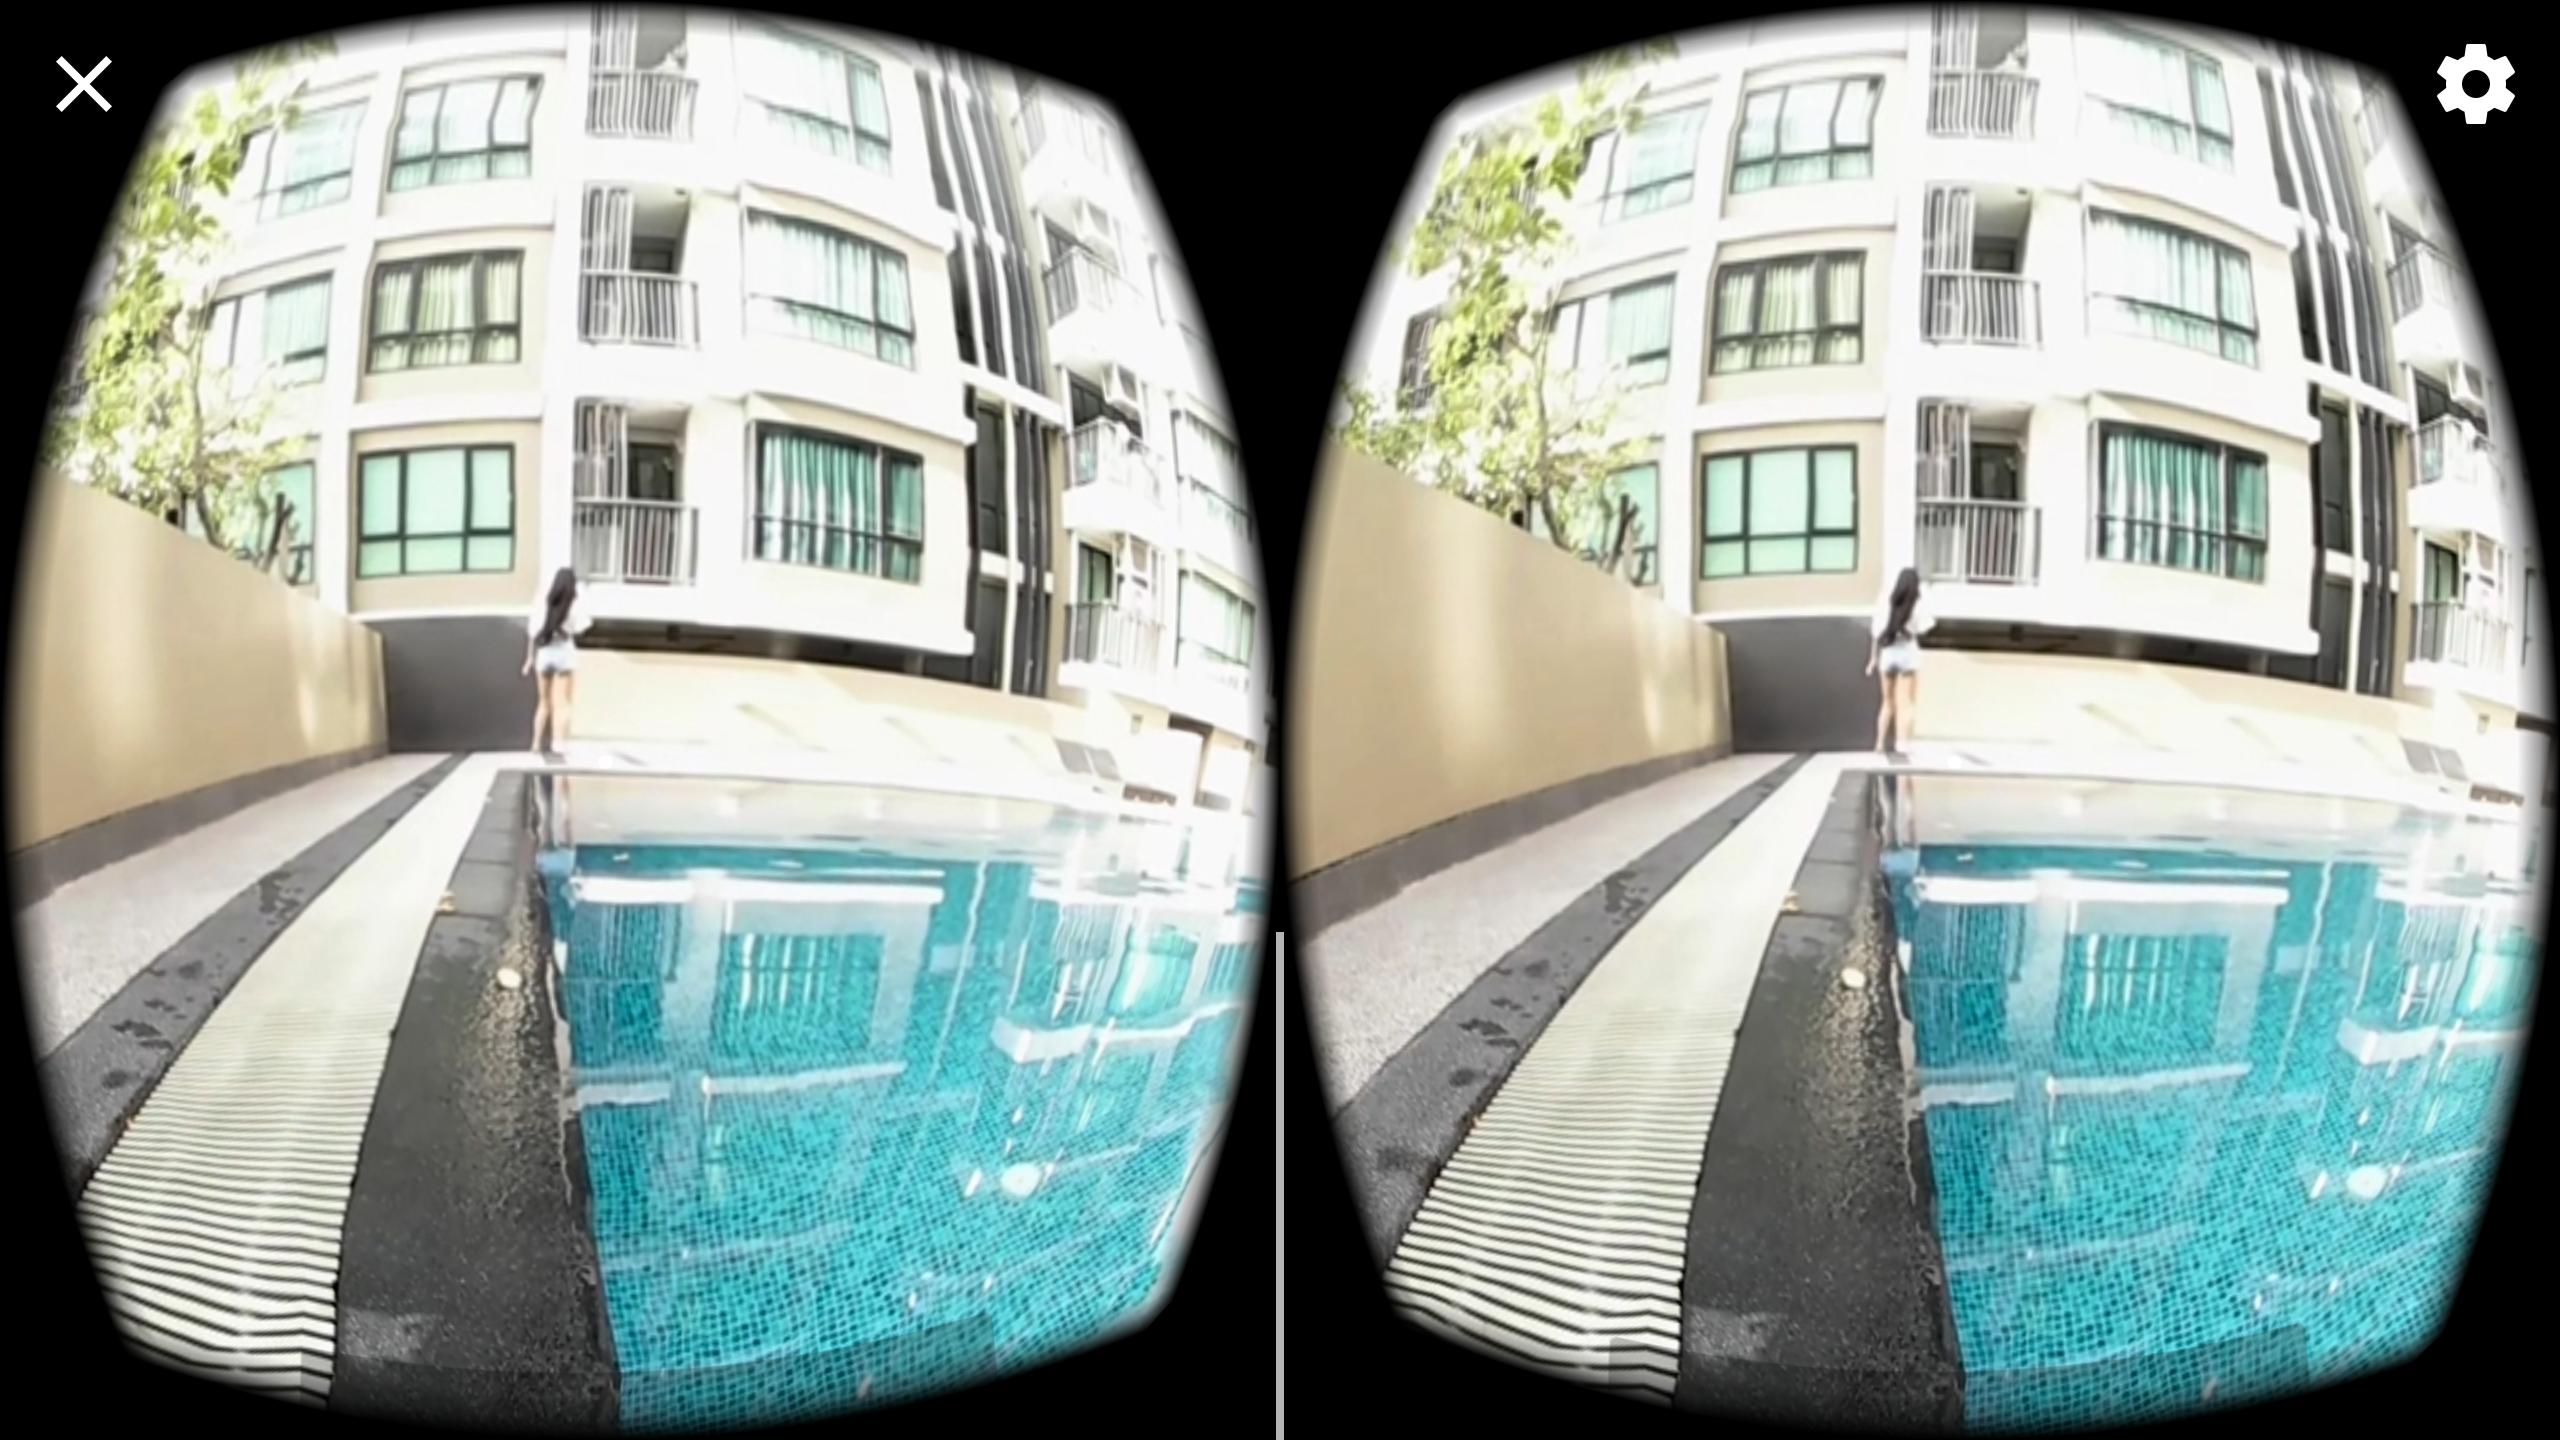 Vr 360 телефон. Изображения в 360 для VR. VR 360 two модель t-0. VR картинки высокого разрешения. Авалон 360 vs холодильник-.